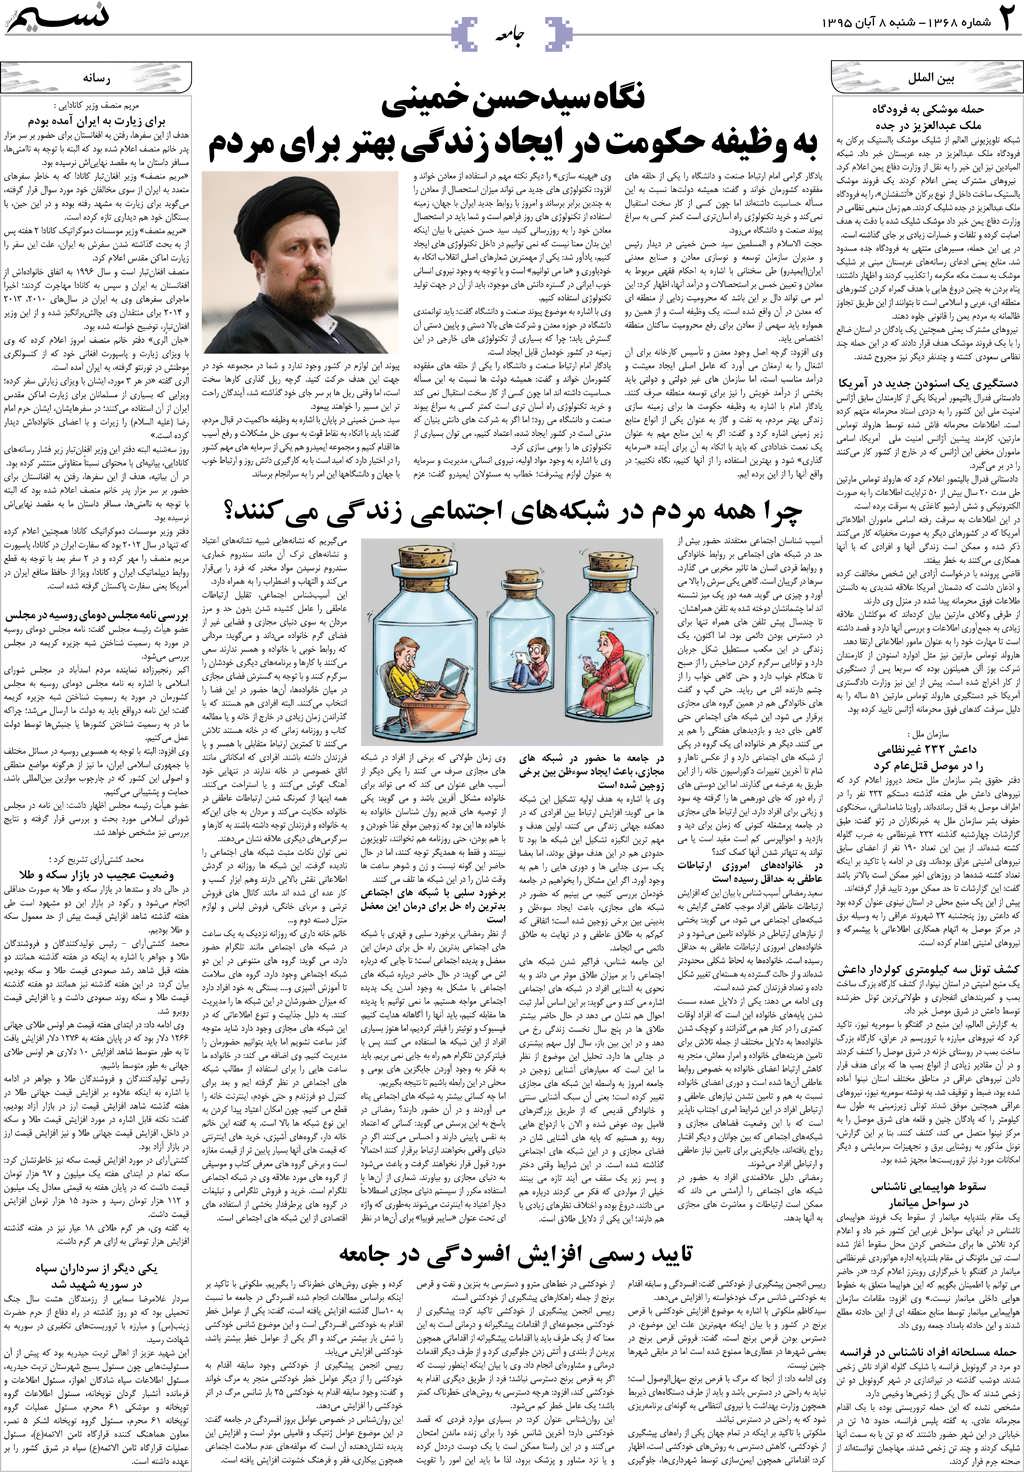 صفحه جامعه روزنامه نسیم شماره 1368